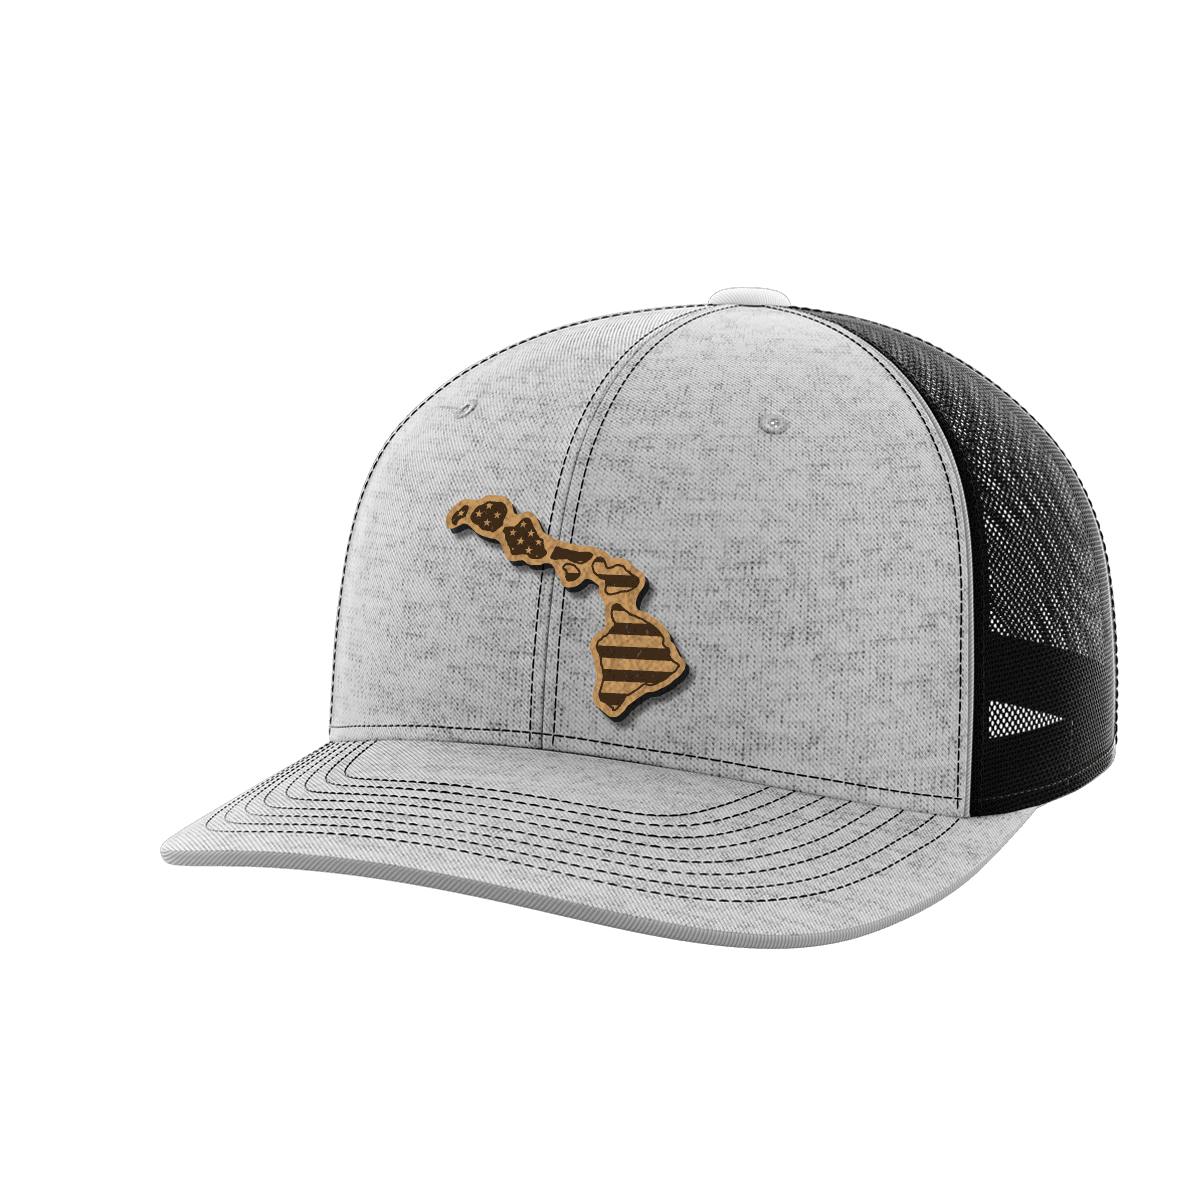 Hawaii United Hats - Greater Half